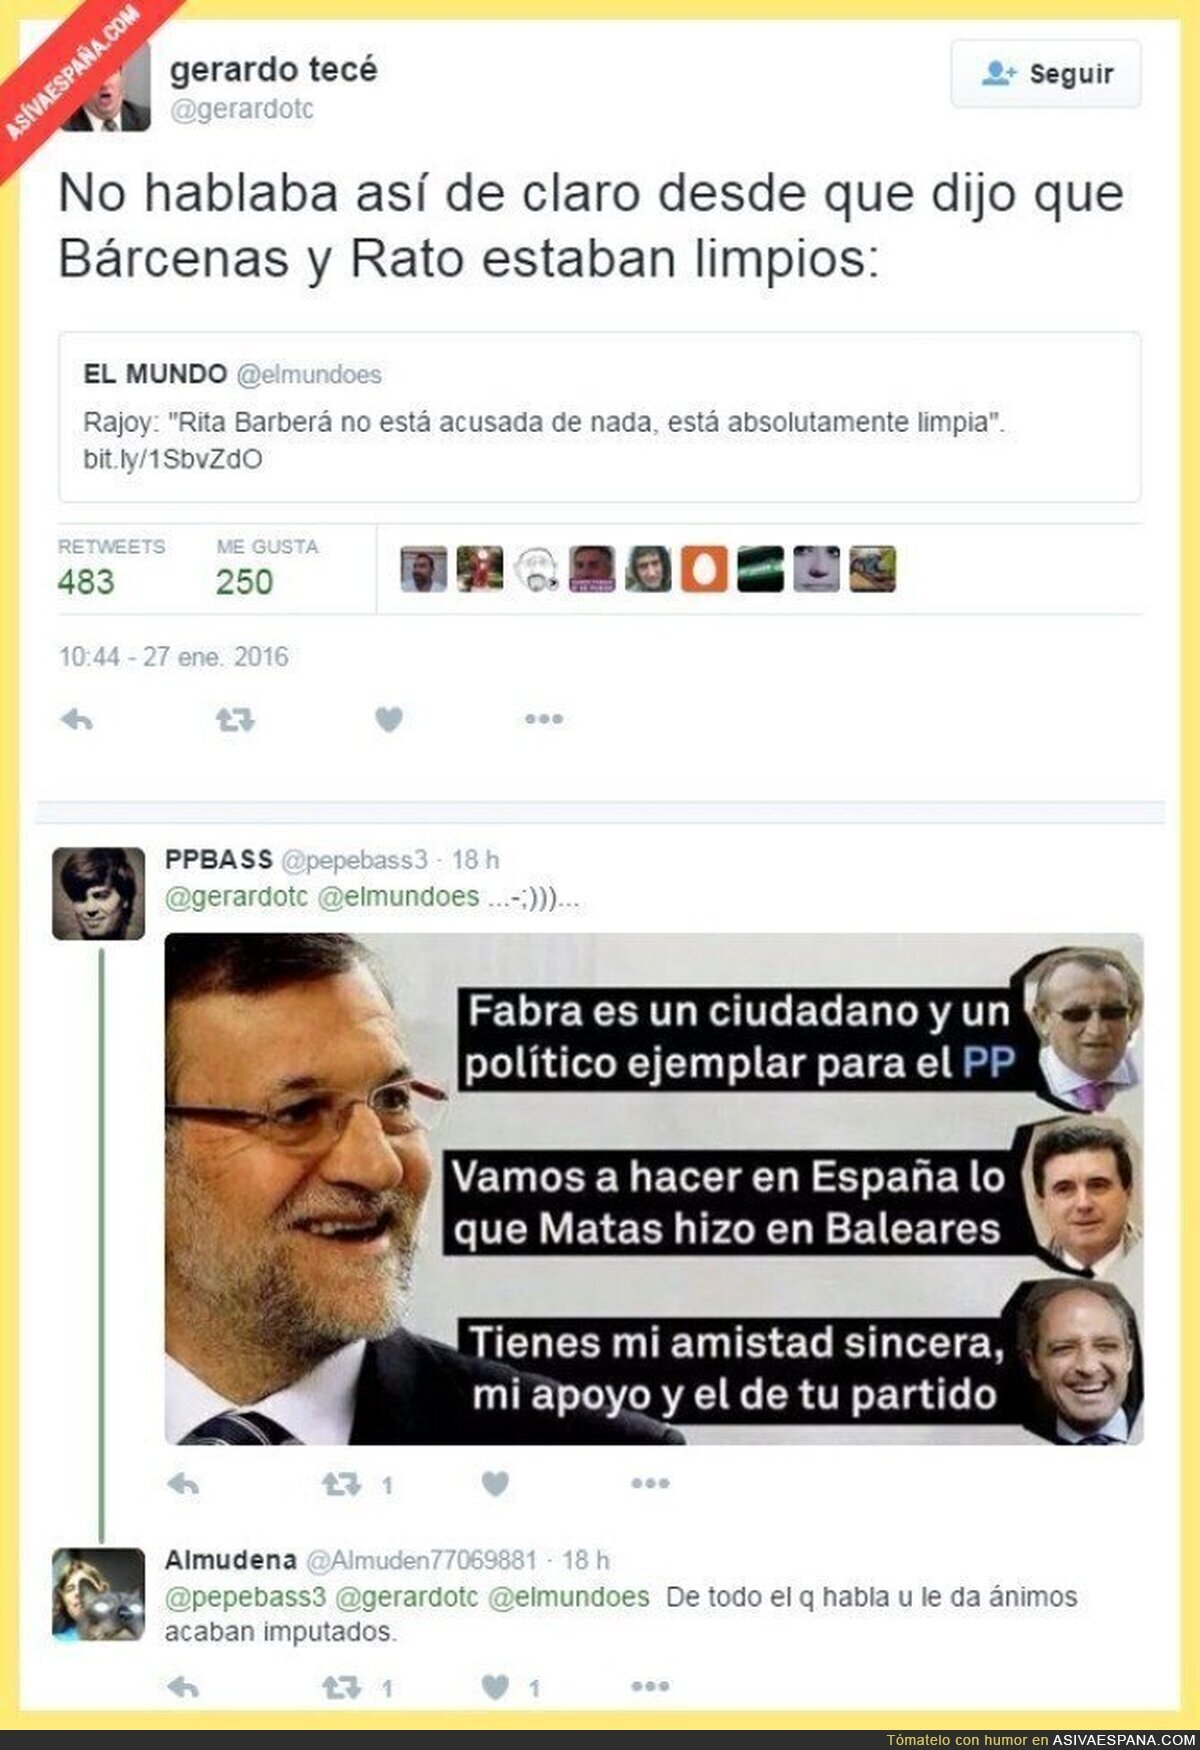 Rajoy dando apoyo a corruptos desde tiempos inmemorables